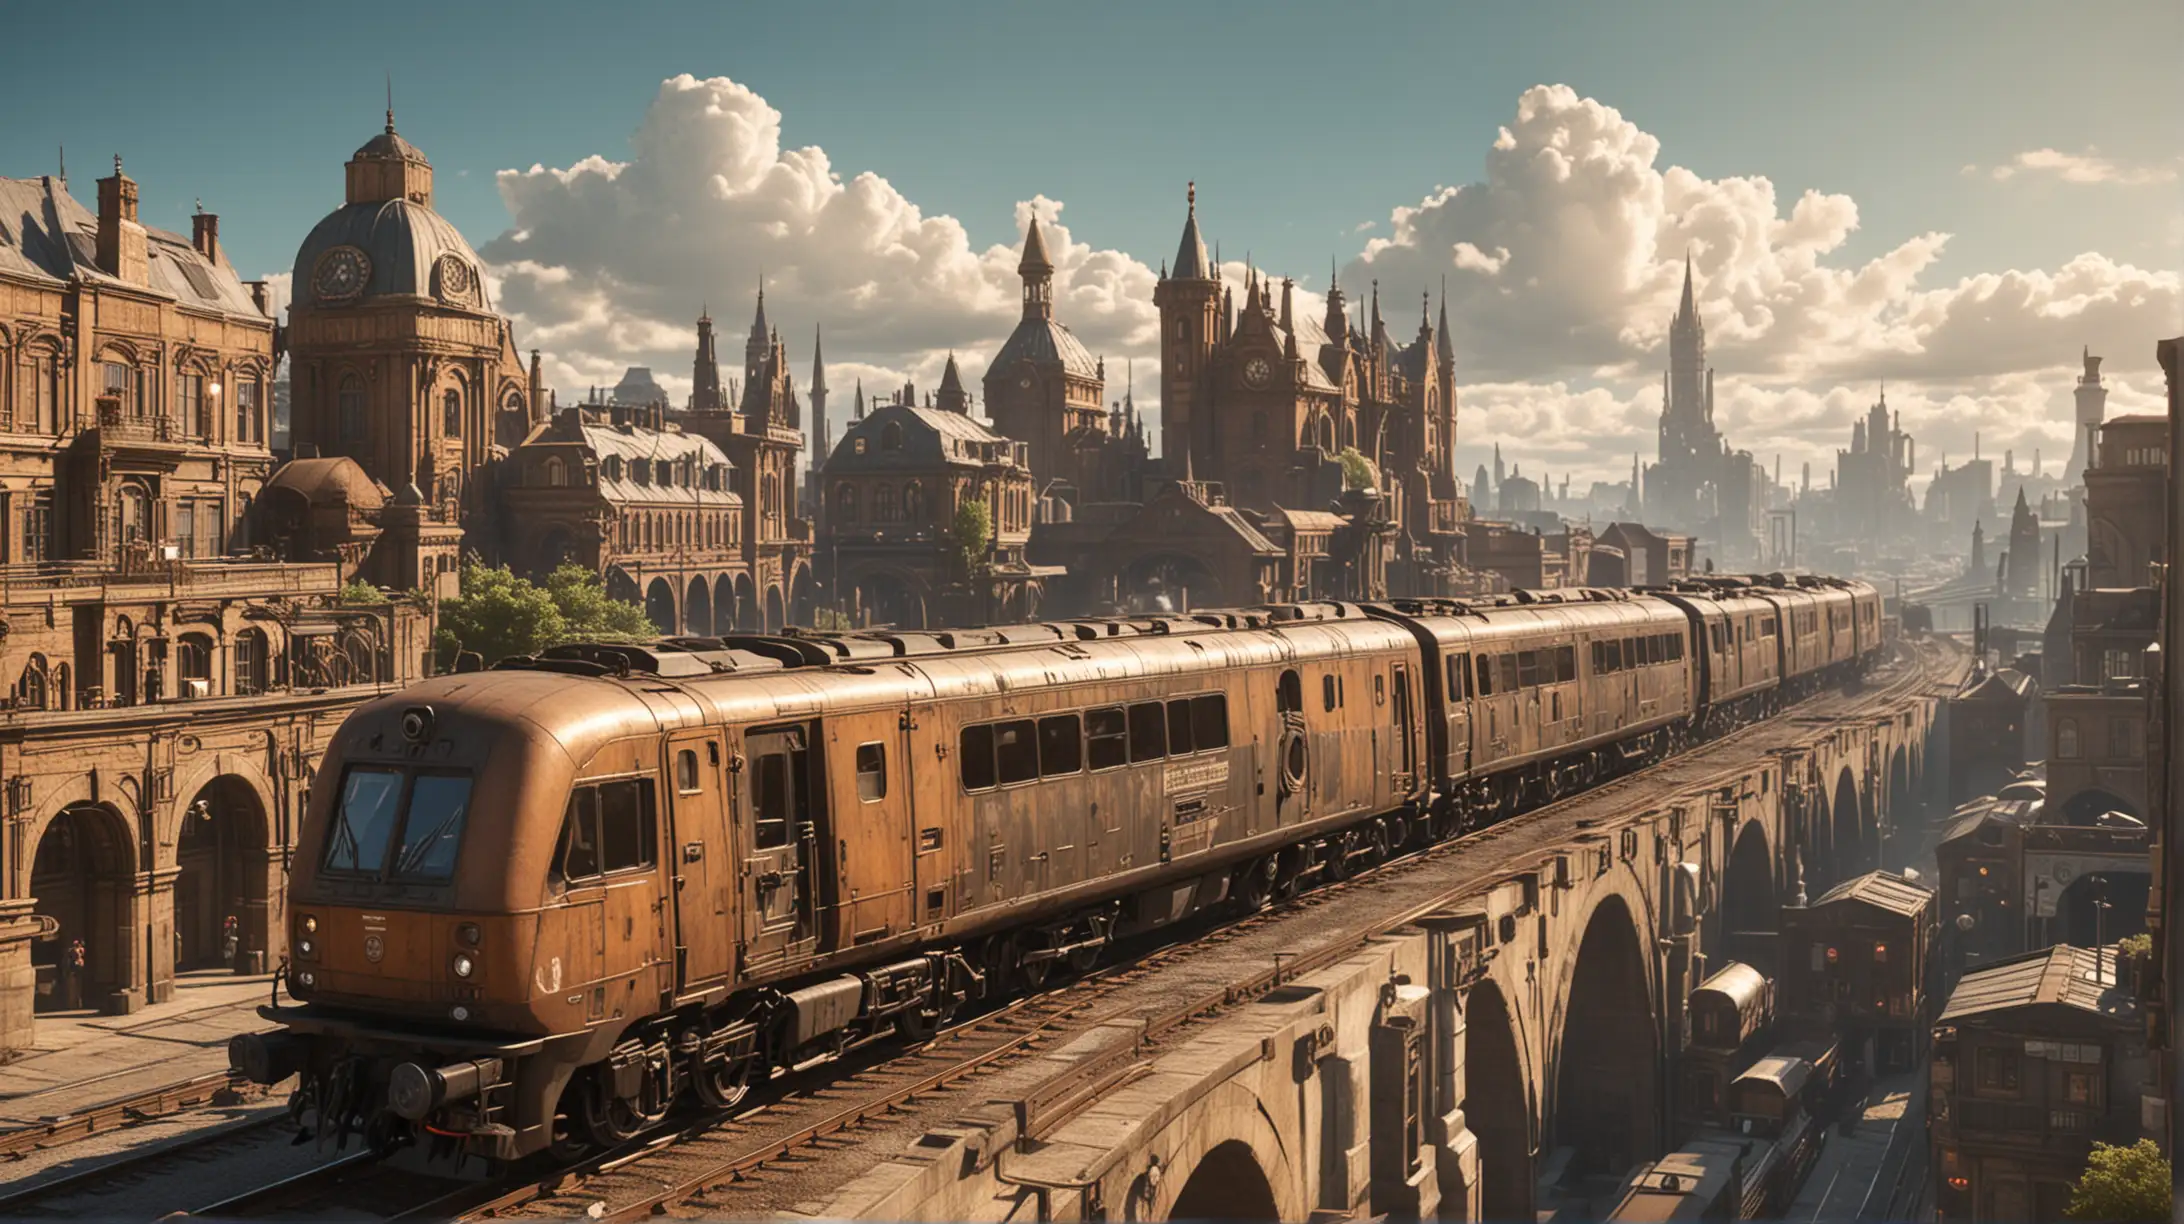 superfast diesel train runs through a steampunk city, sunny, distant view